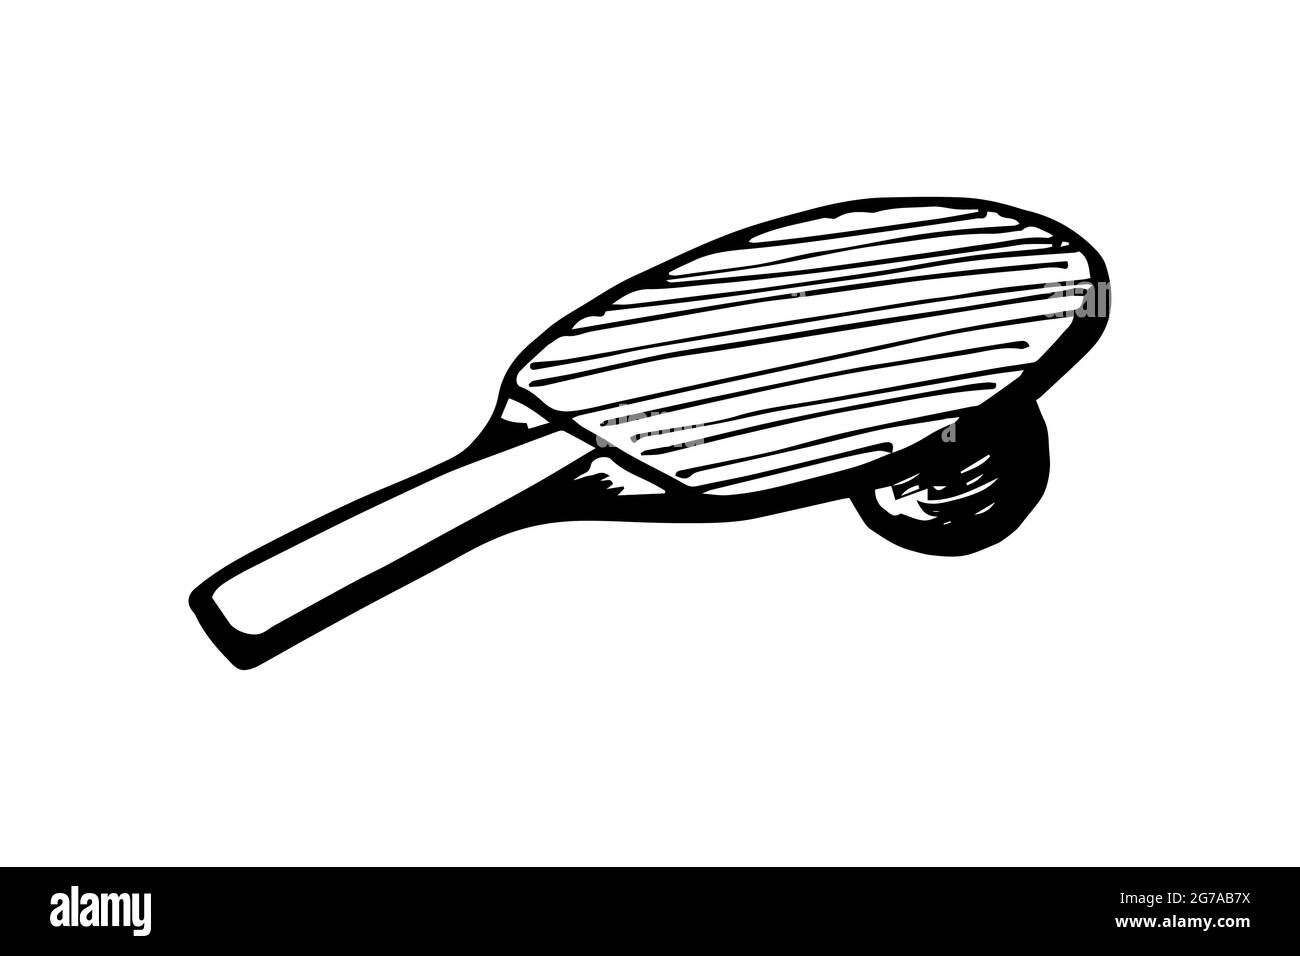 Dessin à la main de la raquette de ping-pong et de la balle.Équipement de tennis de table.Concept d'icône de jeu de ping-pong.Vector eps encre noire Doodle illustration isolée sur fond blanc Illustration de Vecteur